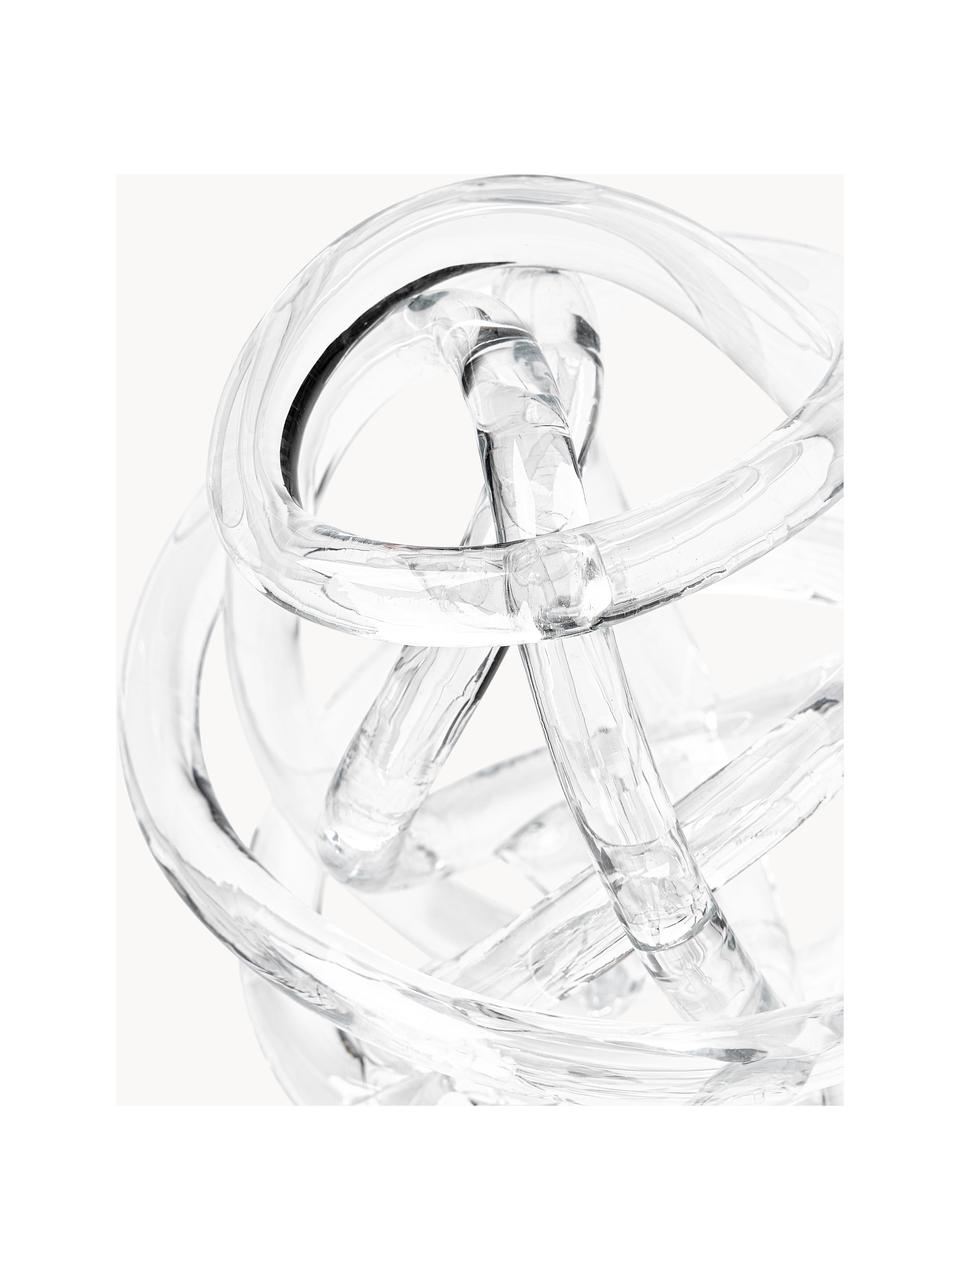 Decoratieve knoopobjecten Nola van glas, set van 2, Glas, Transparant, Set met verschillende formaten